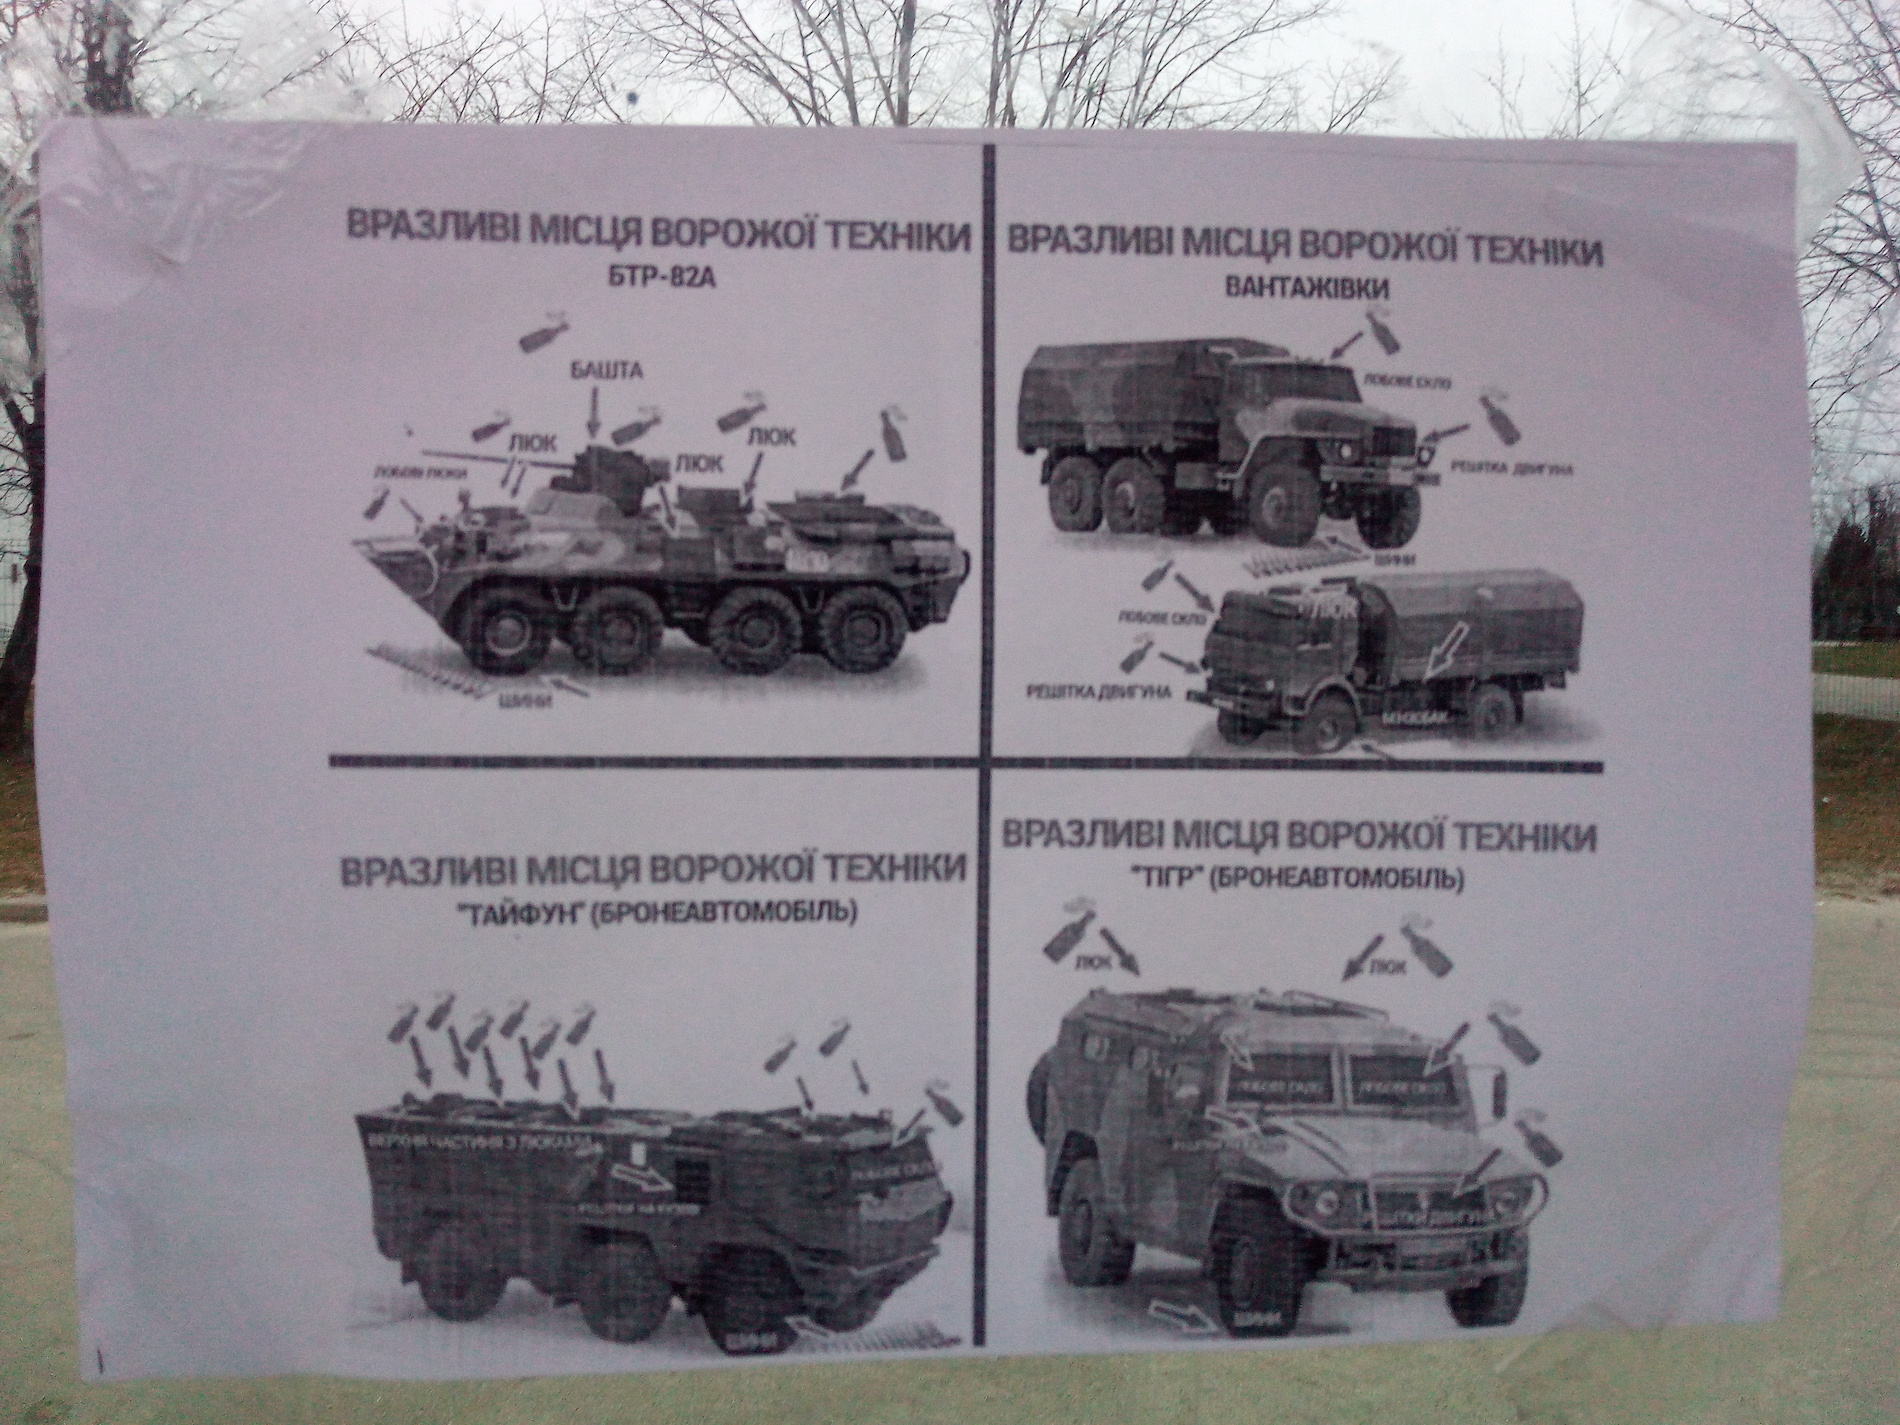 An einer Haltestelle erklärt ein Flyer, wo sich die Schwachstellen der russischen Fahrzeuge befinden.